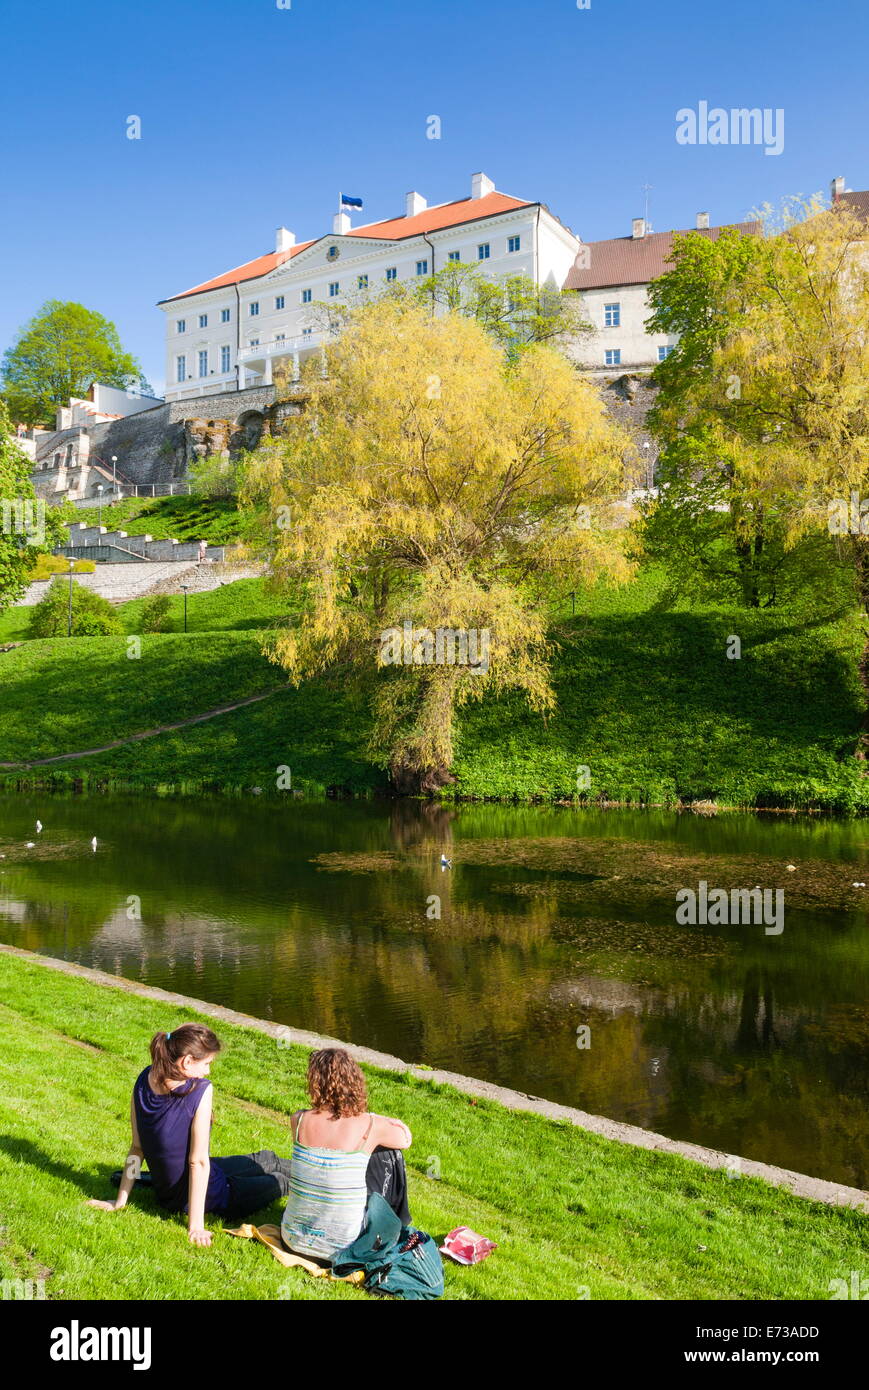 La colline de Toompea, Snelli Tiik Lac, vieille ville de Tallinn, Site du patrimoine mondial de l'UNESCO, l'Estonie, pays Baltes, Europe Banque D'Images